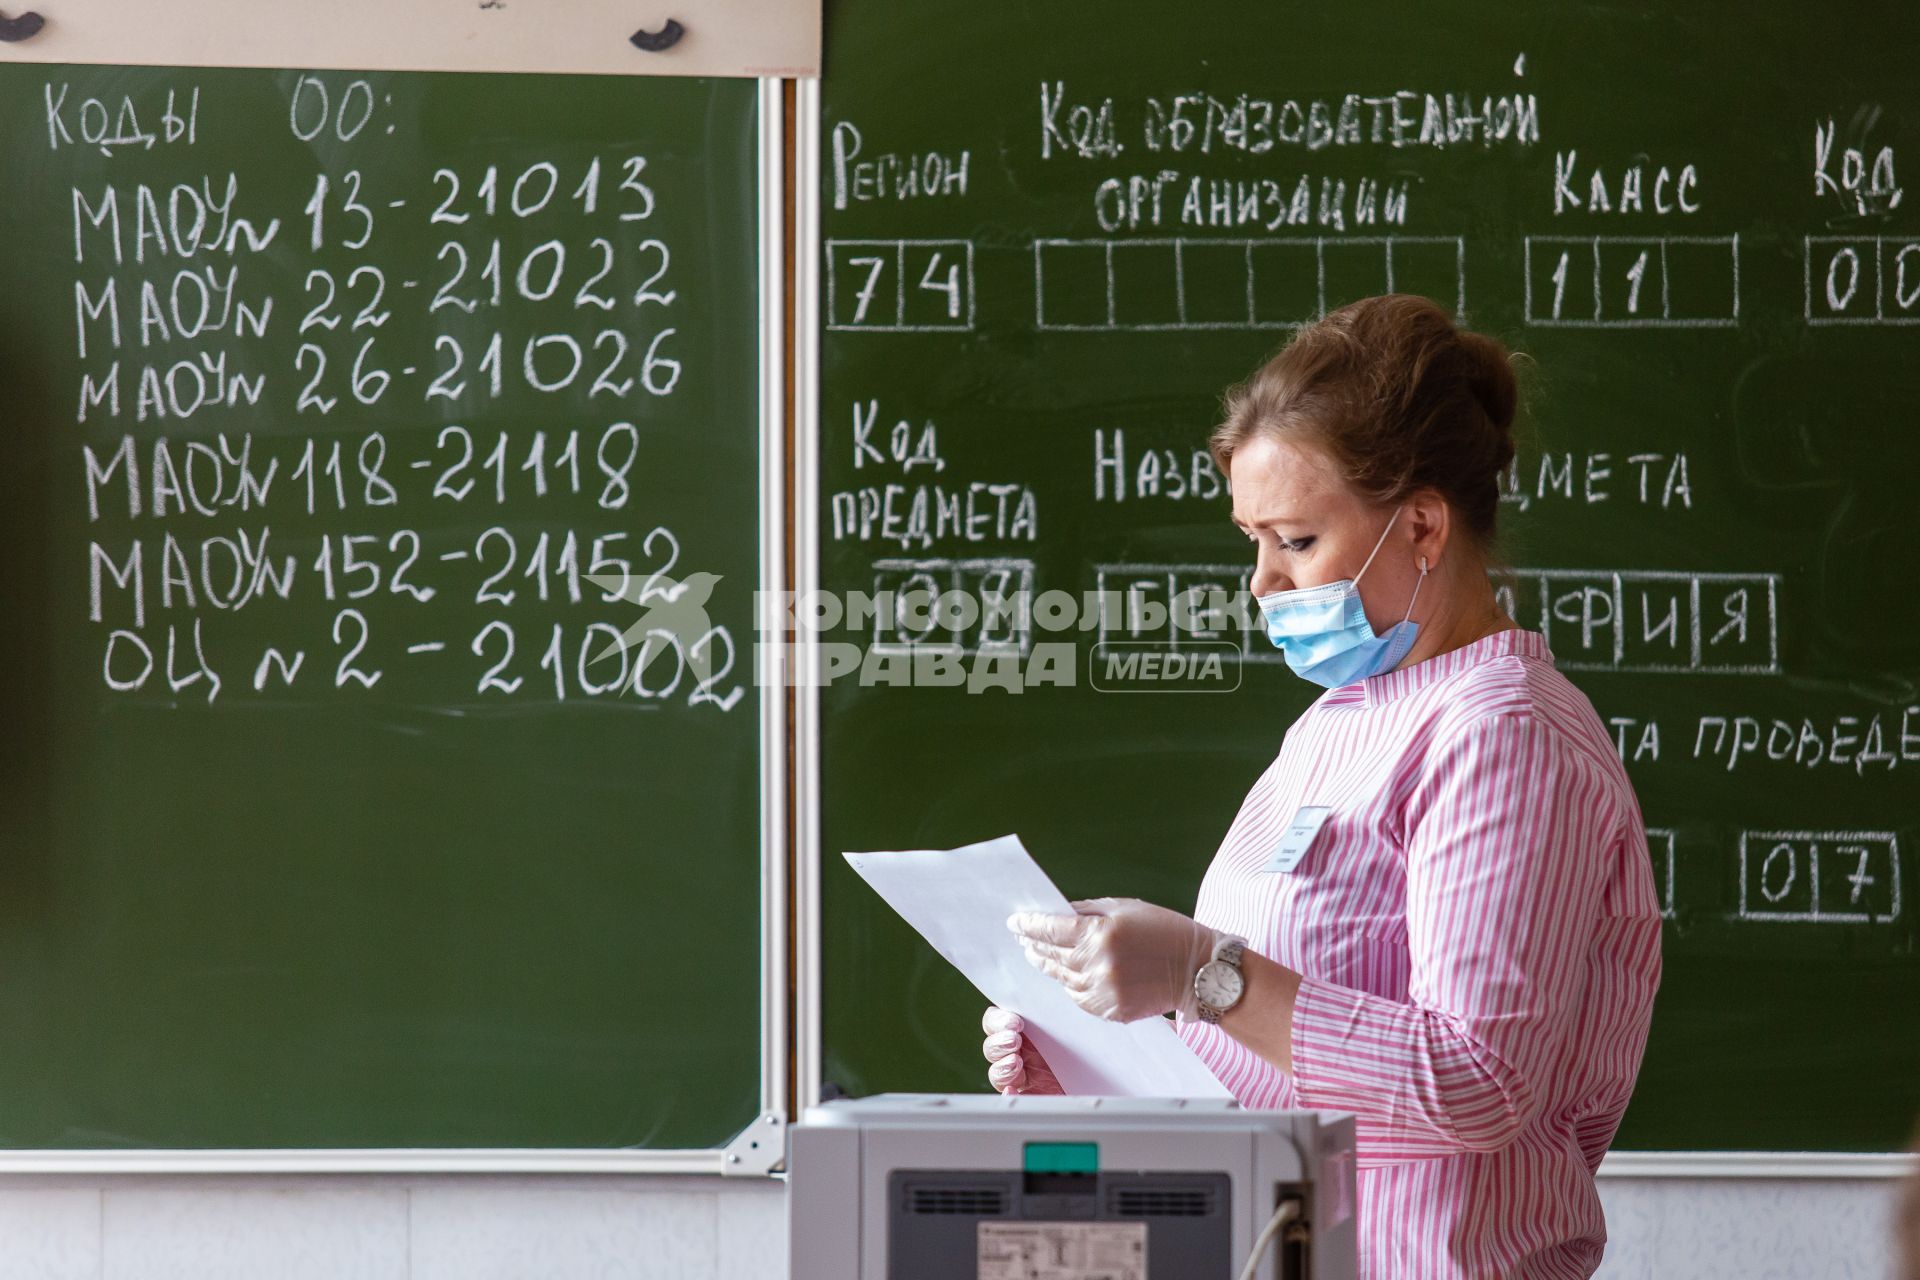 Челябинск. Организатор в аудитории перед началом единого государственного экзамена (ЕГЭ) в школе.